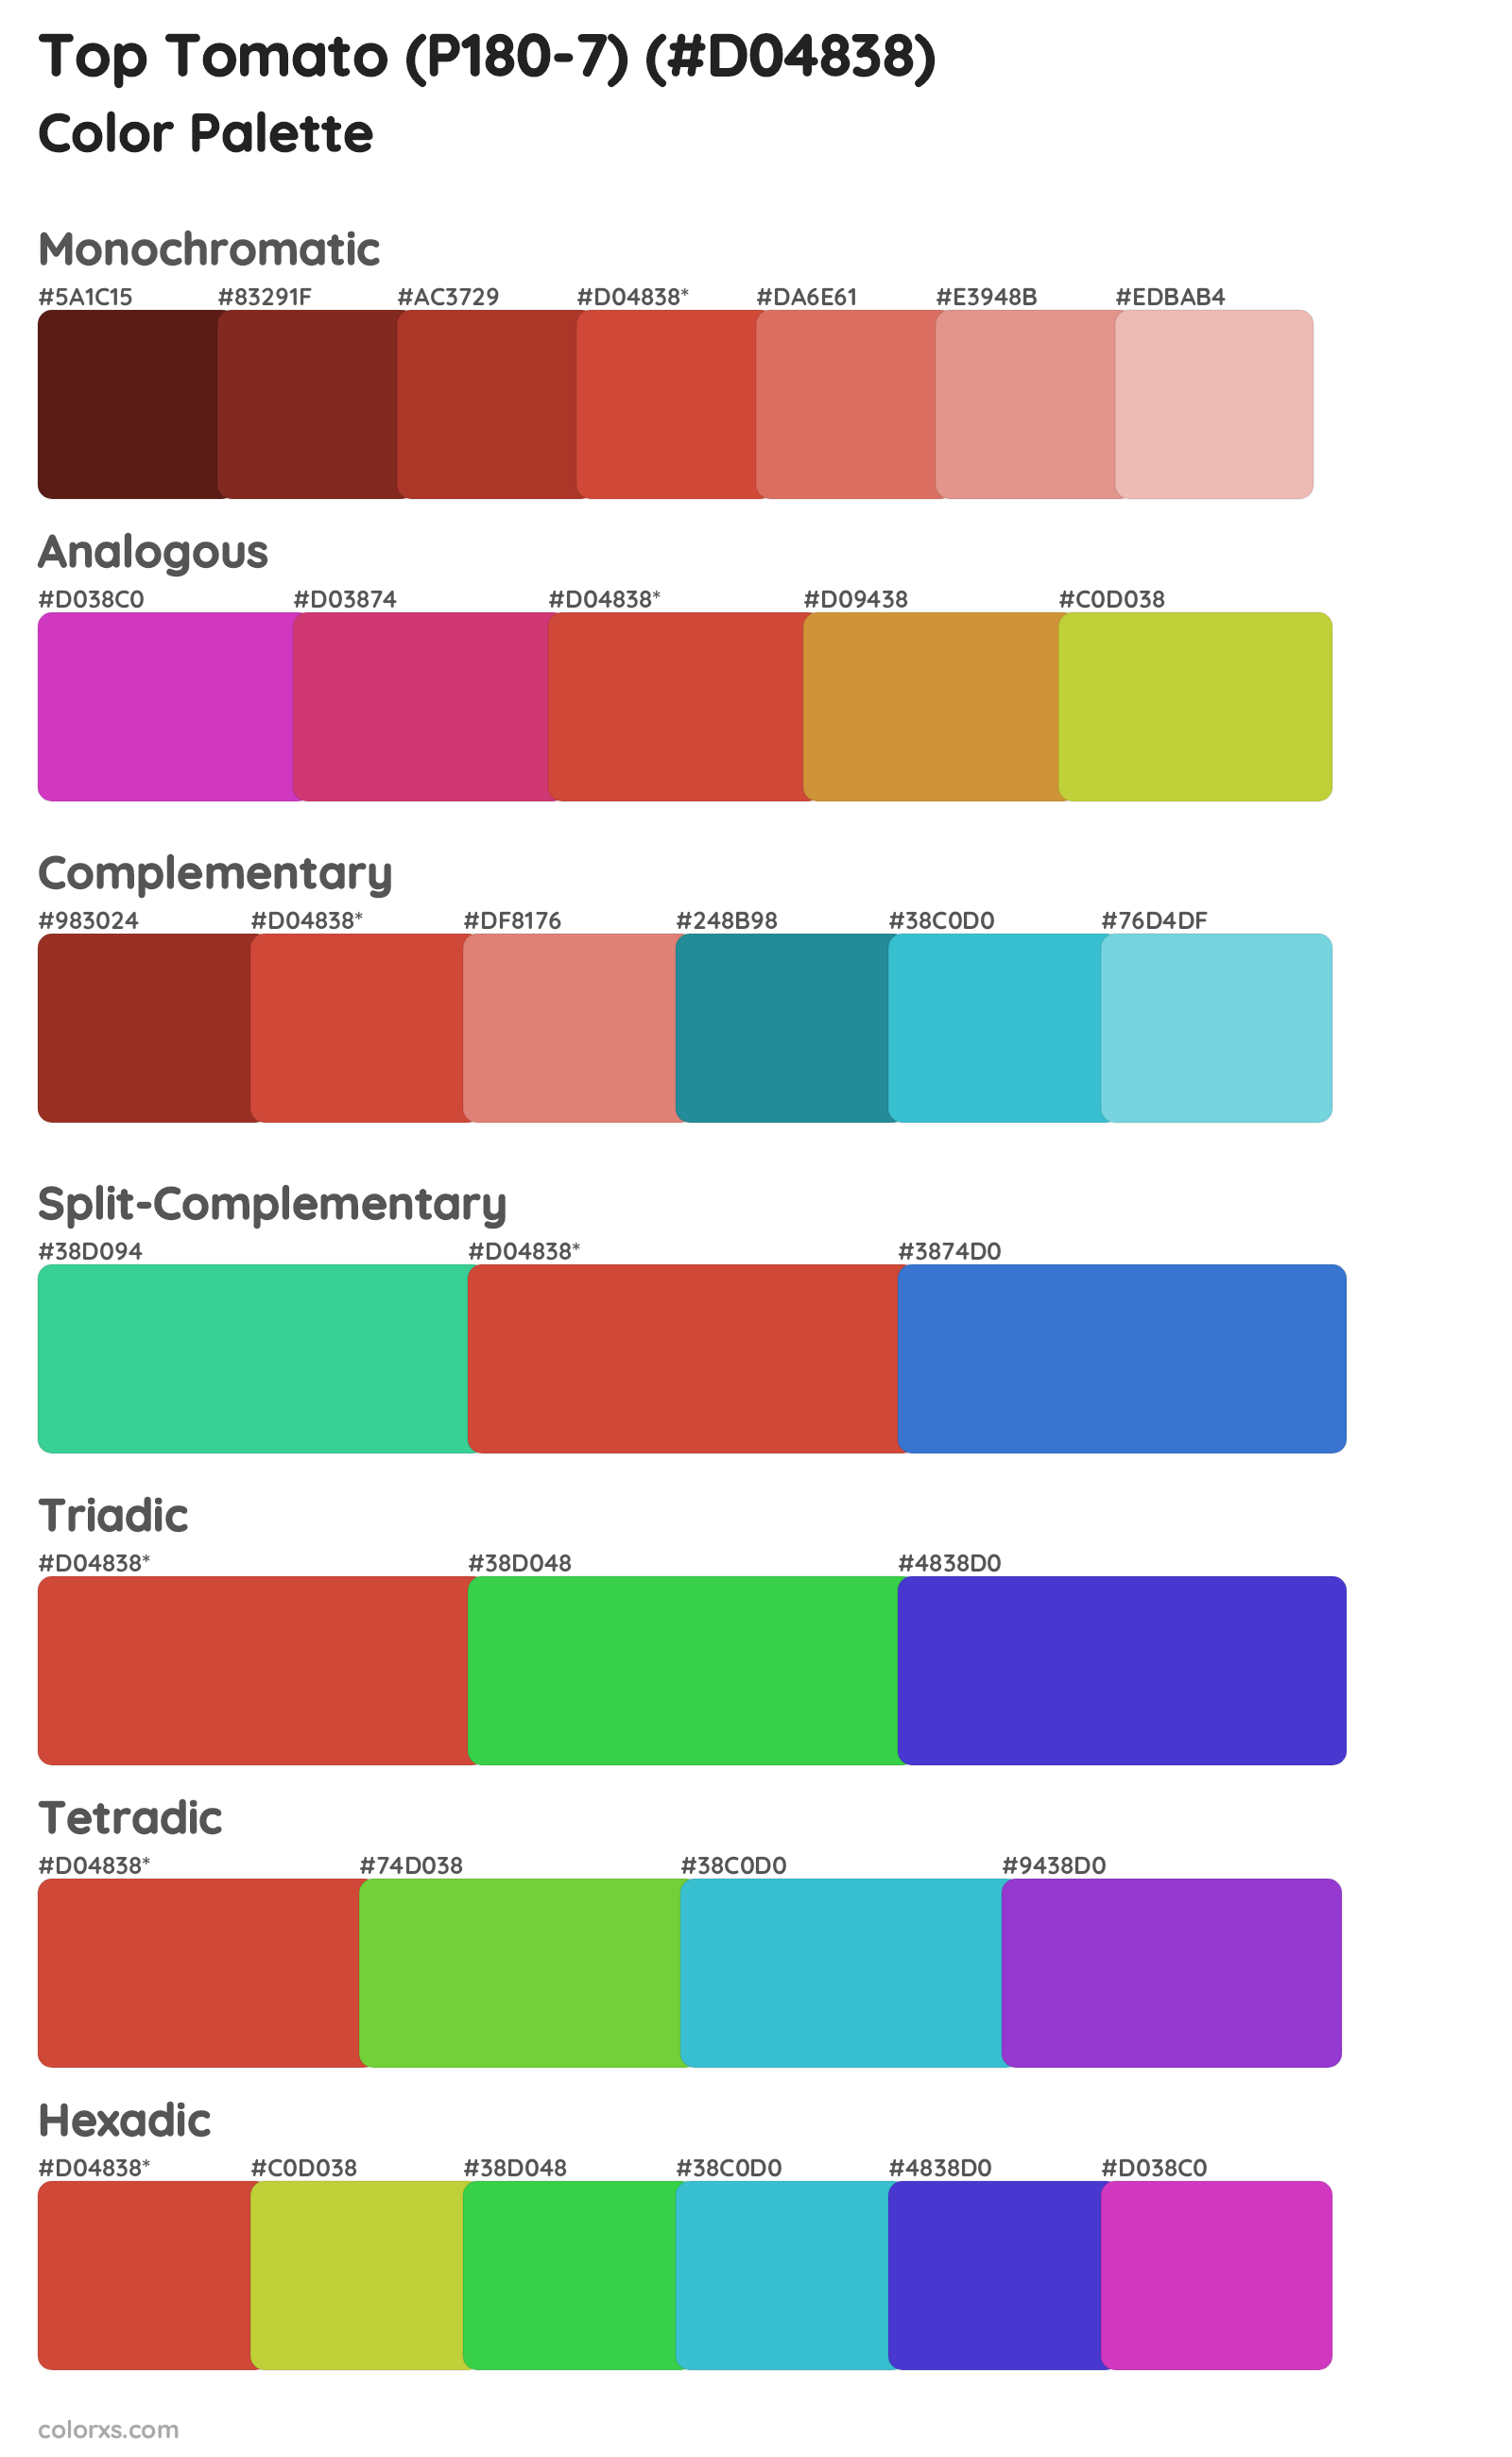 Top Tomato (P180-7) Color Scheme Palettes